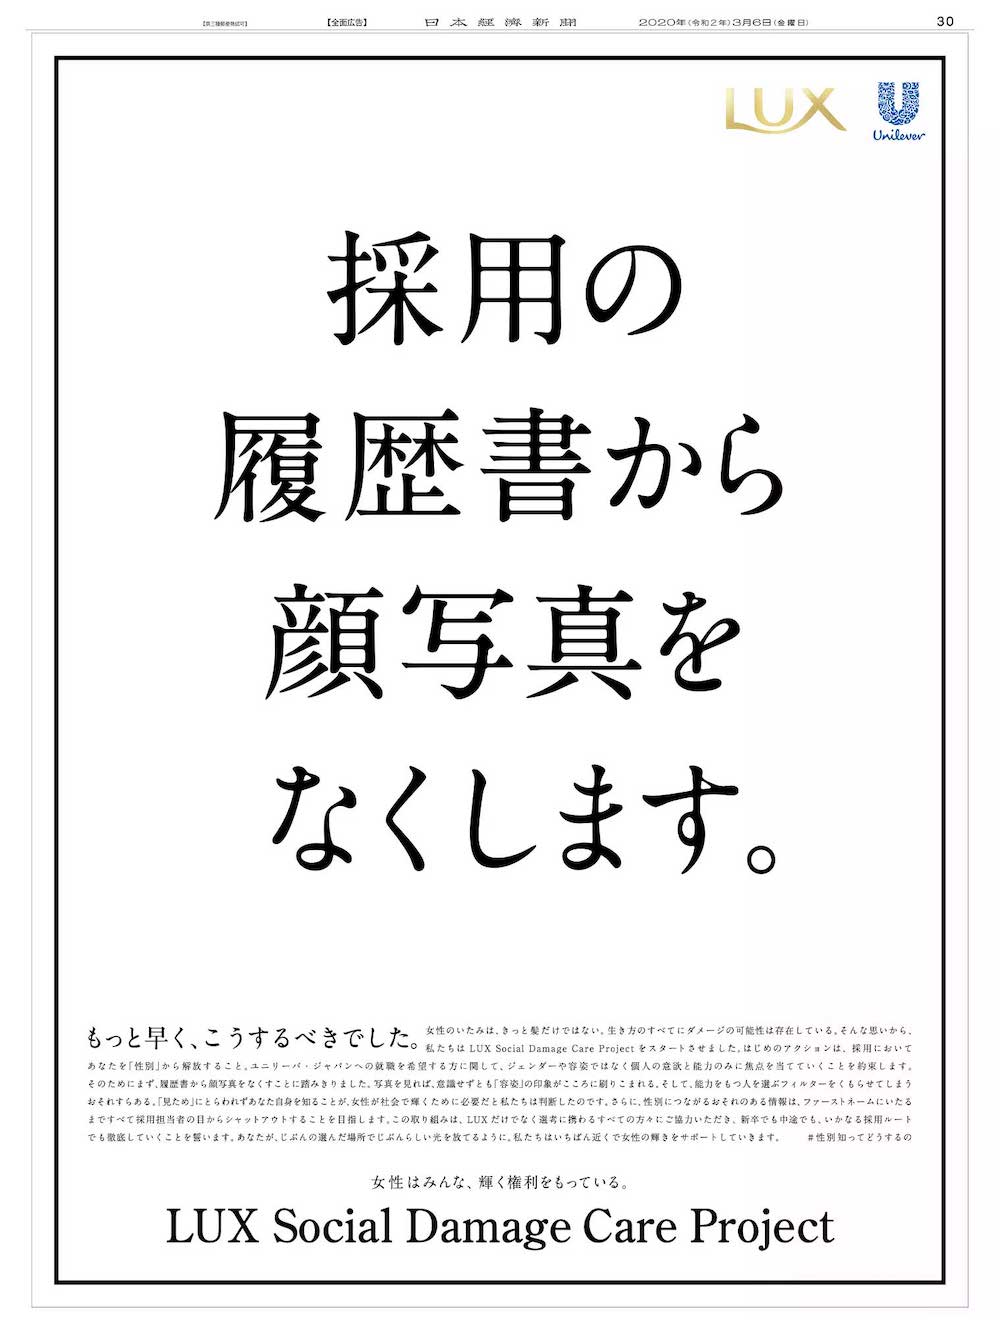 日本経済新聞2020年3月6日掲載の新聞広告